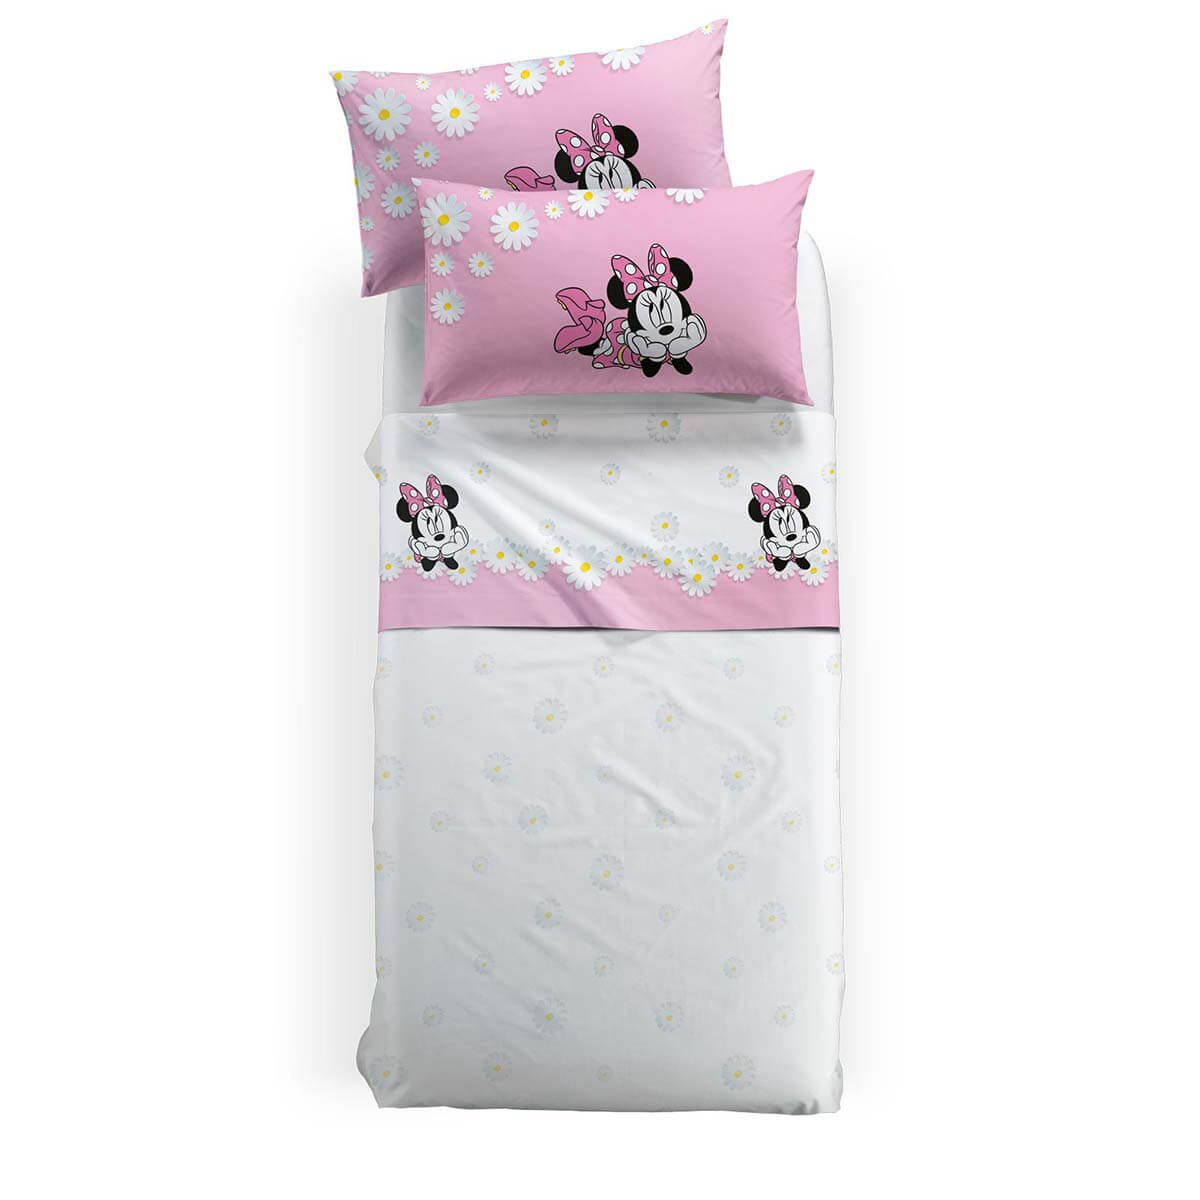 Completo lenzuola Minnie Margherite caleffi disney cotone letto singolo e piazza e mezza bambina con fiori. colore bianco e rosa.